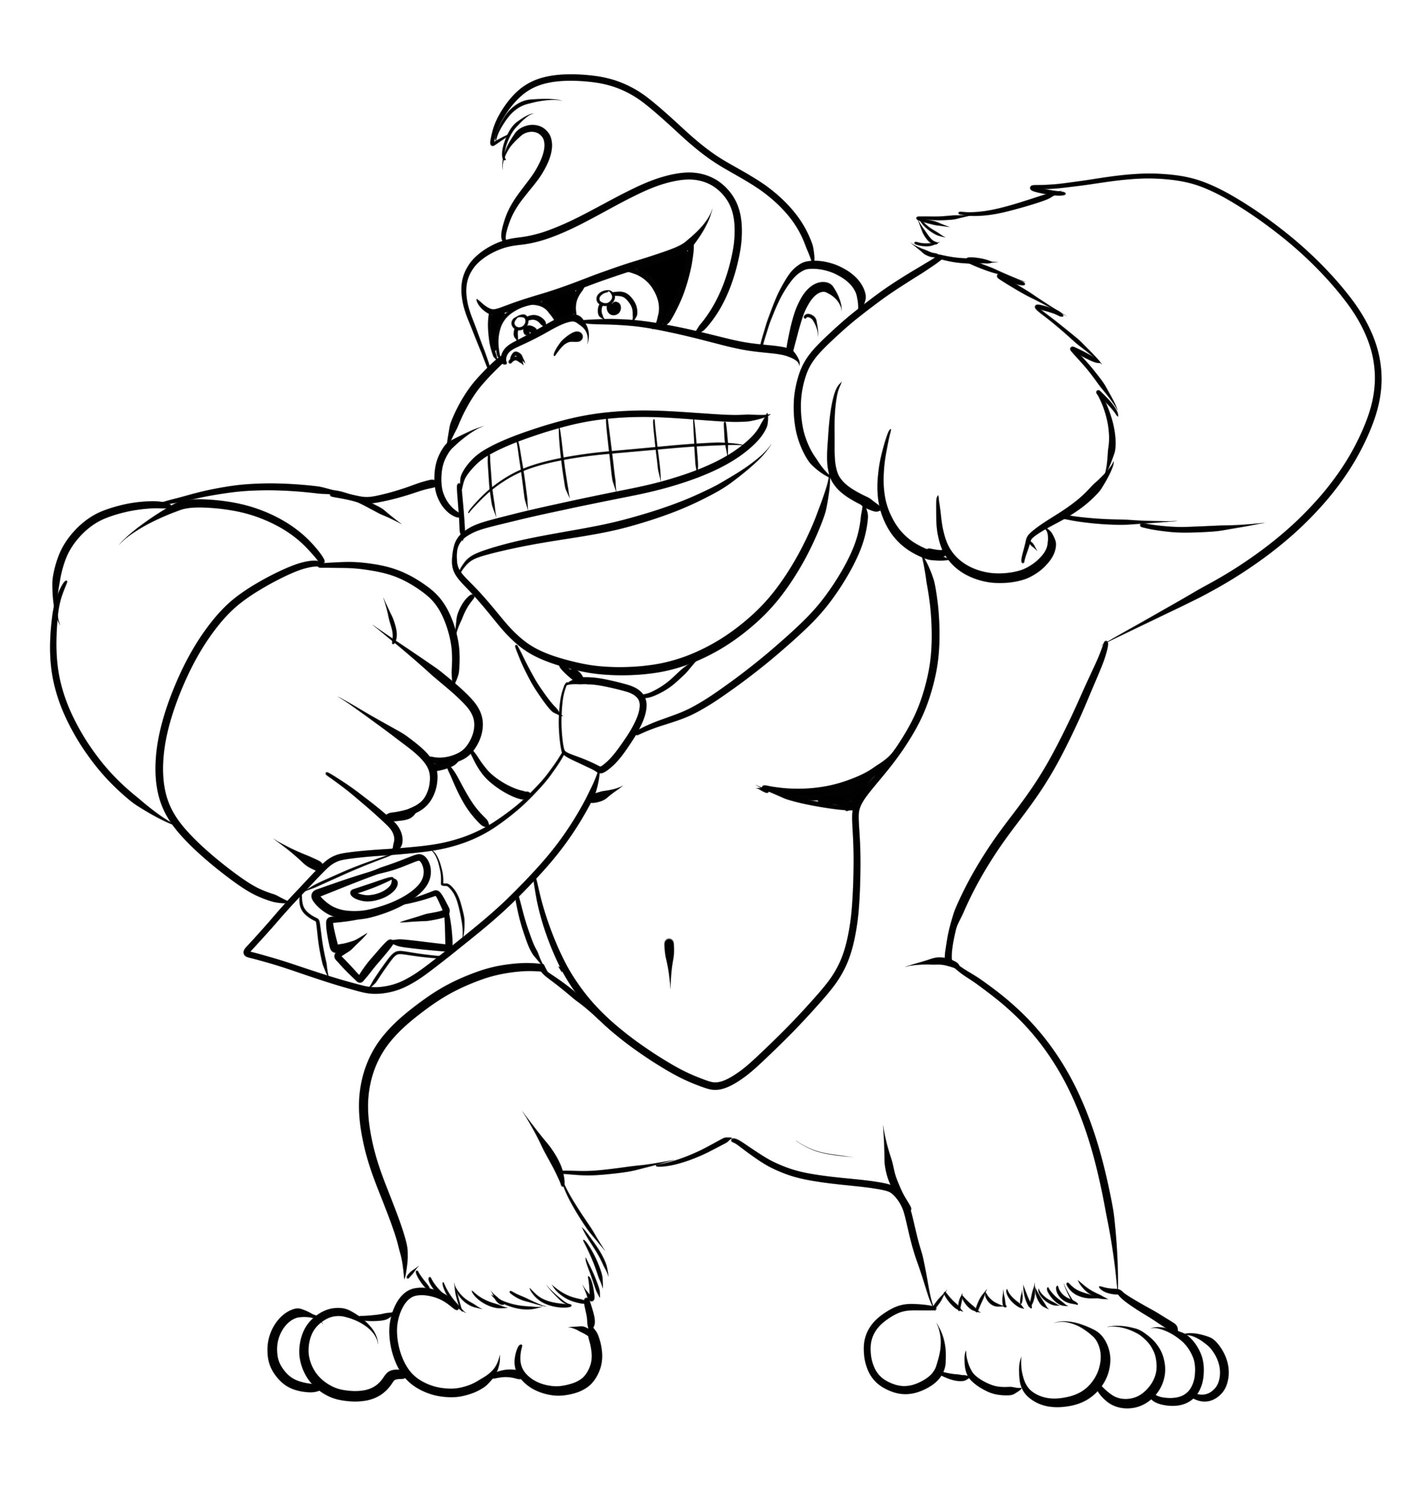 Coloriage 02 de Donkey Kong  imprimer et colorier